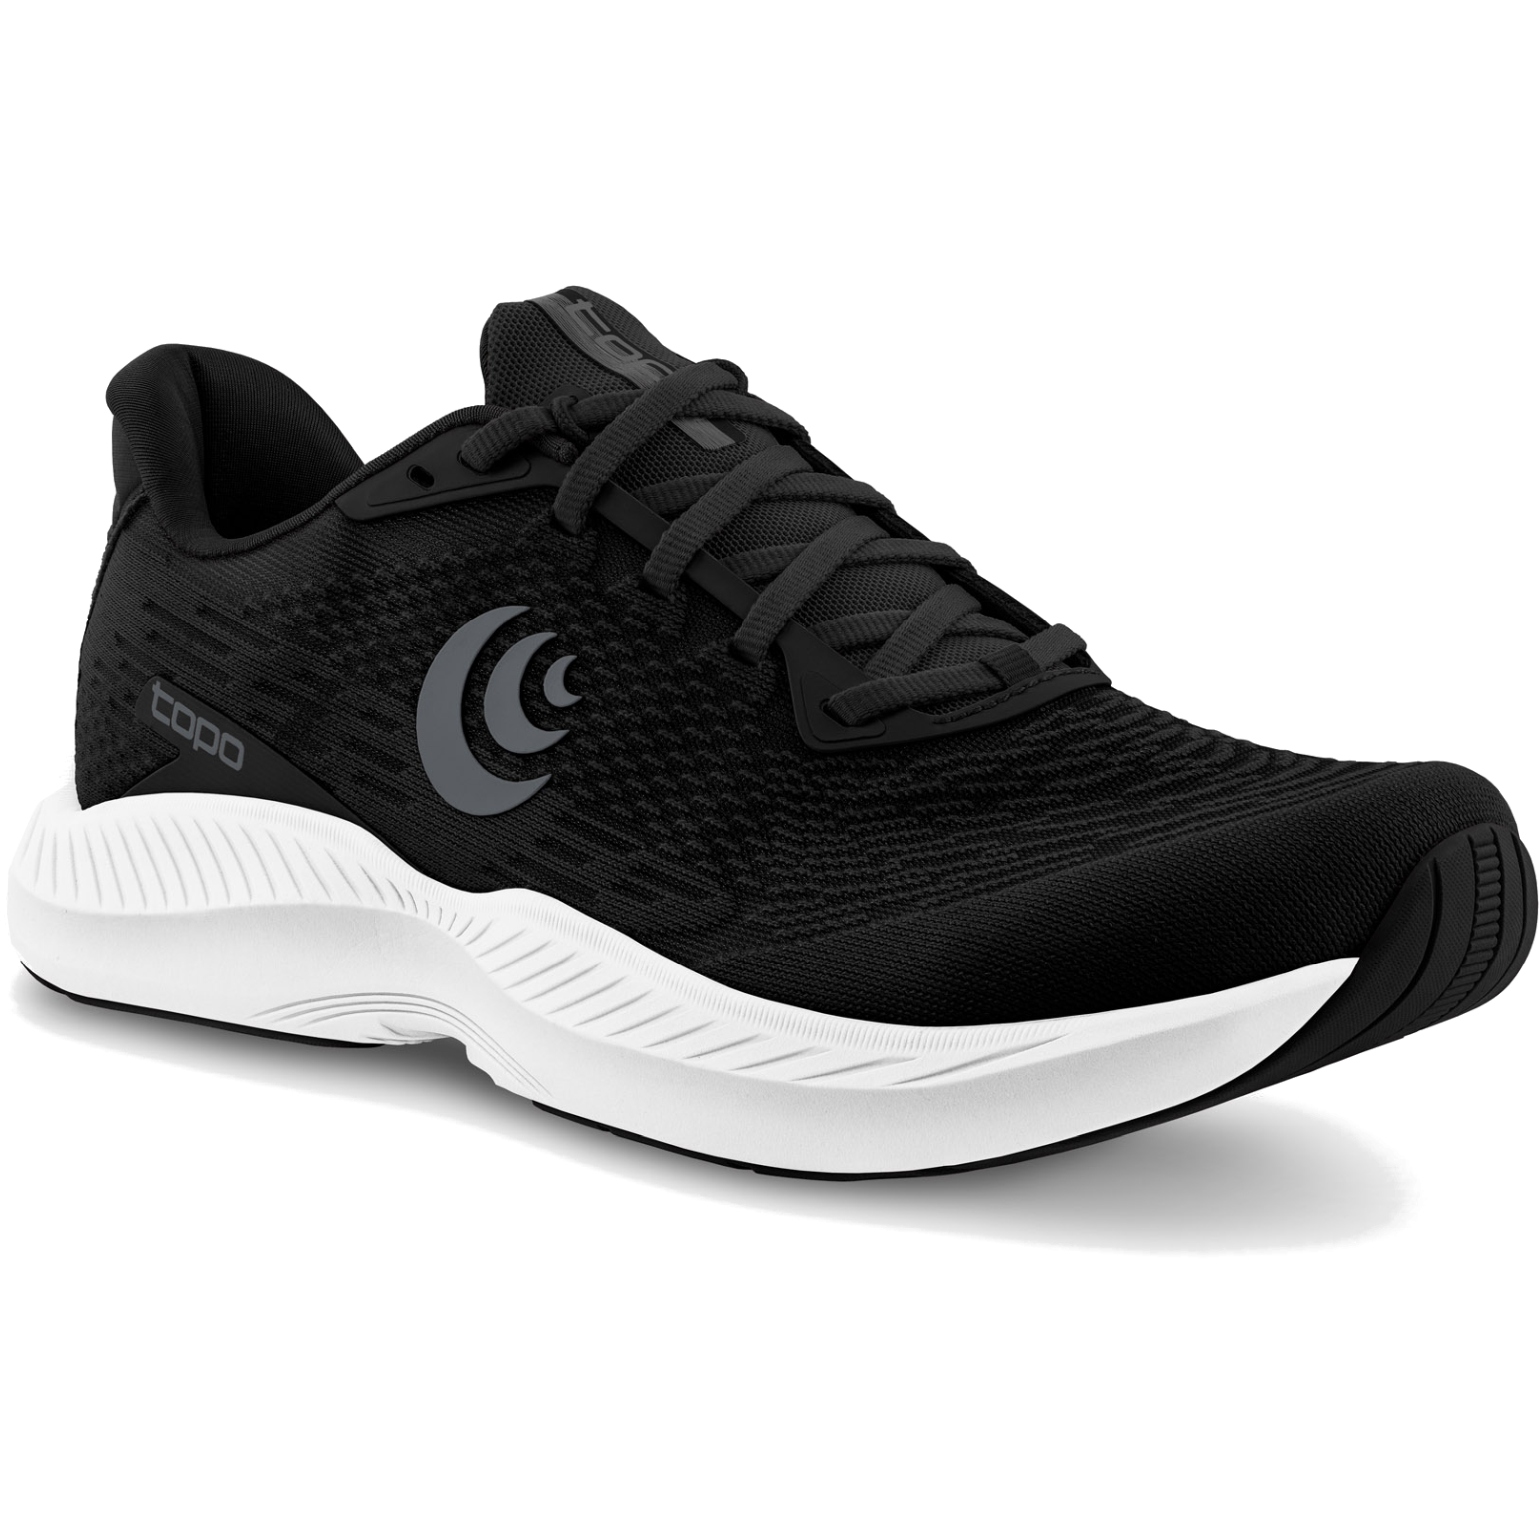 Productfoto van Topo Athletic Fli-Lyte 5 Hardloopschoenen Dames - zwart/wit